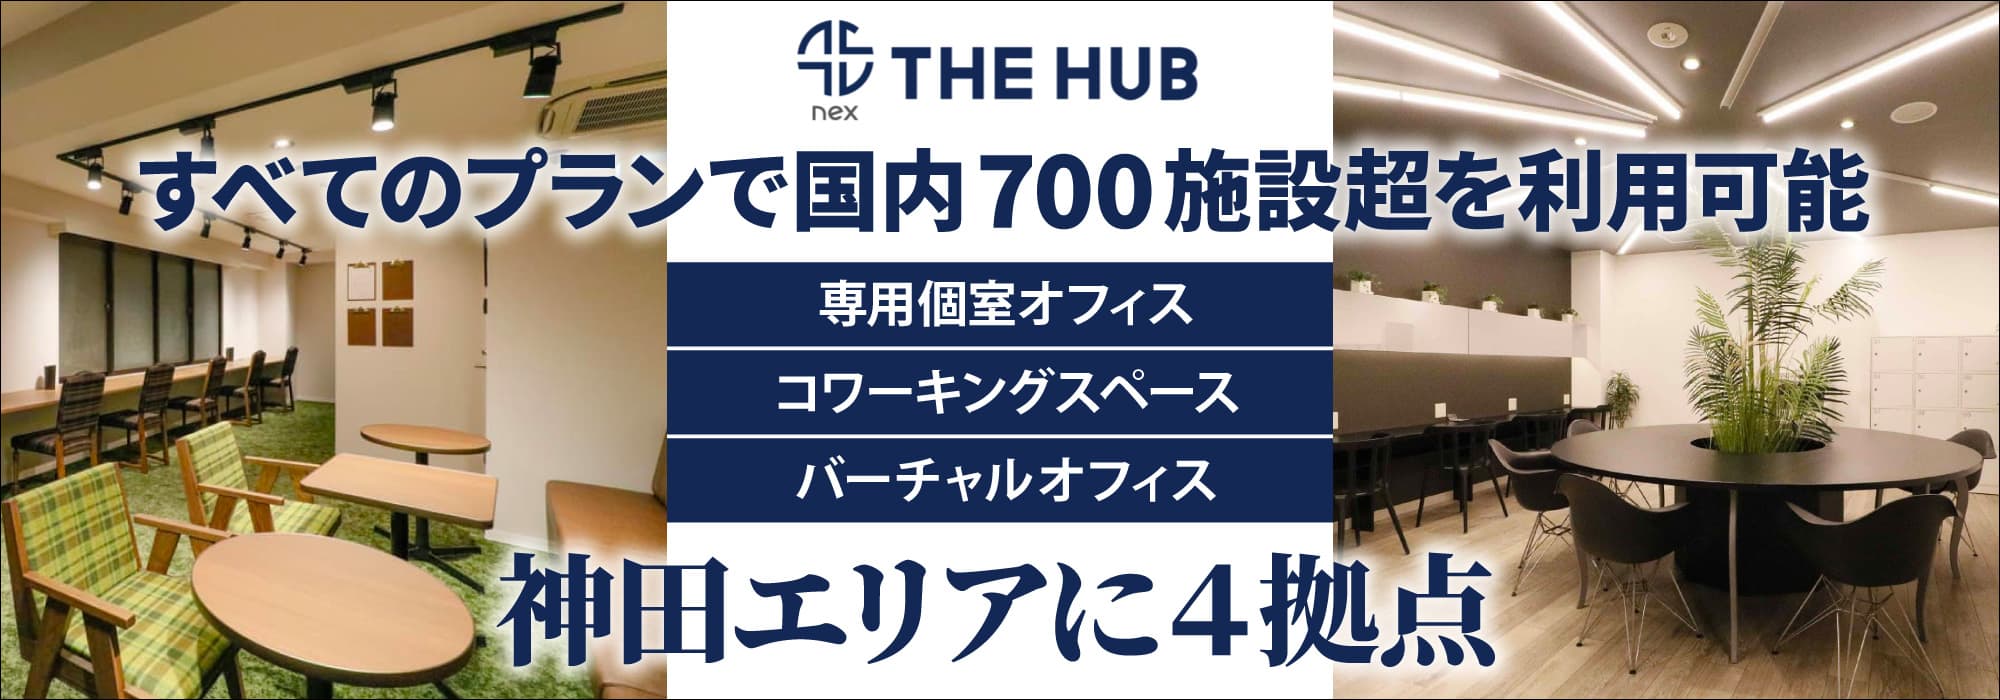 神田エリアに４拠点、創造力と生産性を刺激するレンタルオフィス【THE HUB】すべてのプランで国内700施設超を利用可能